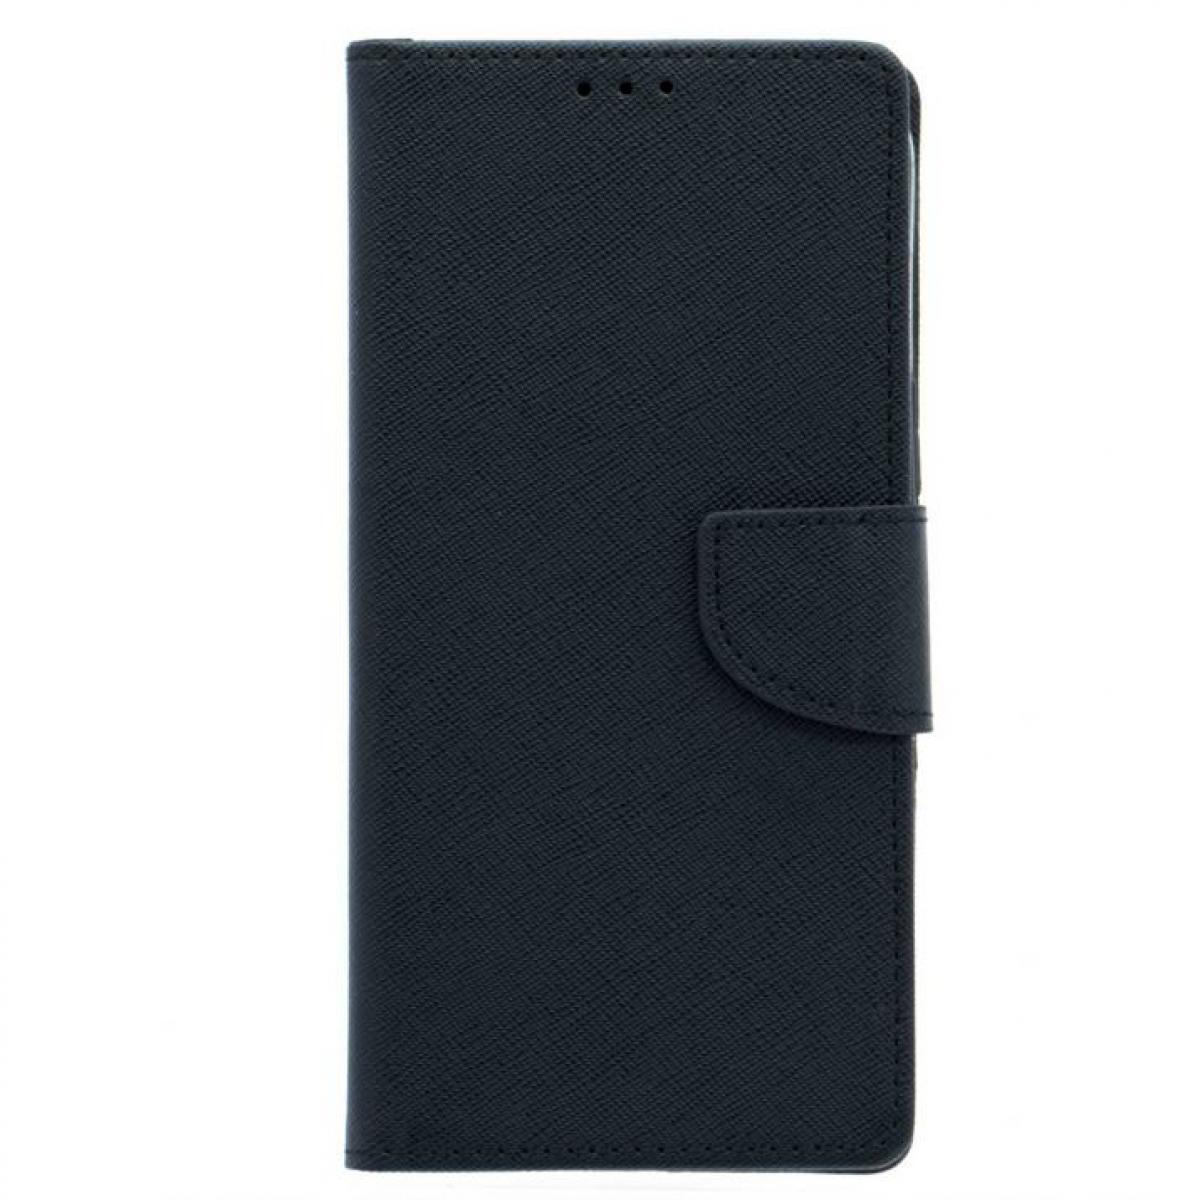 Amahousse - Housse noire étui portefeuille languette pour iPhone 12 Pro Max - Coque, étui smartphone